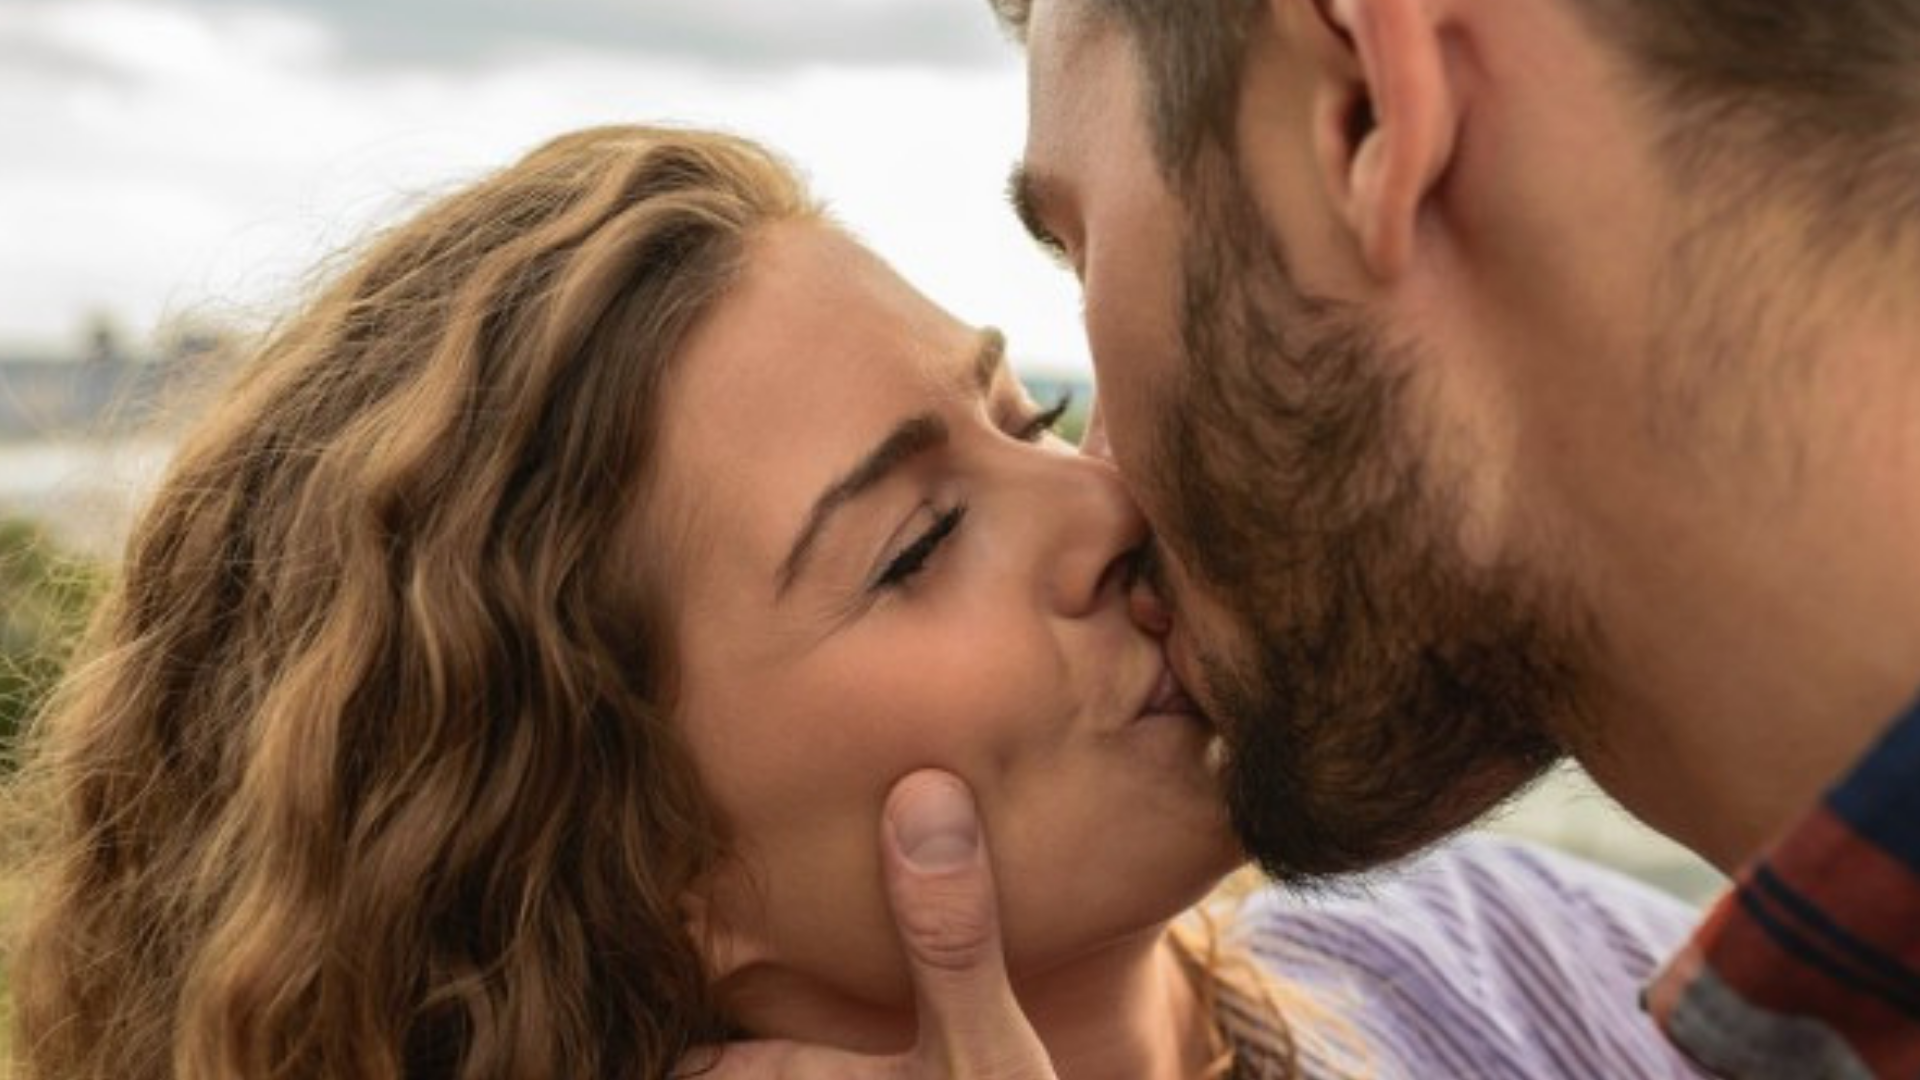 8 речей, які можна дізнатися про людину за допомогою лише одного поцілунку  